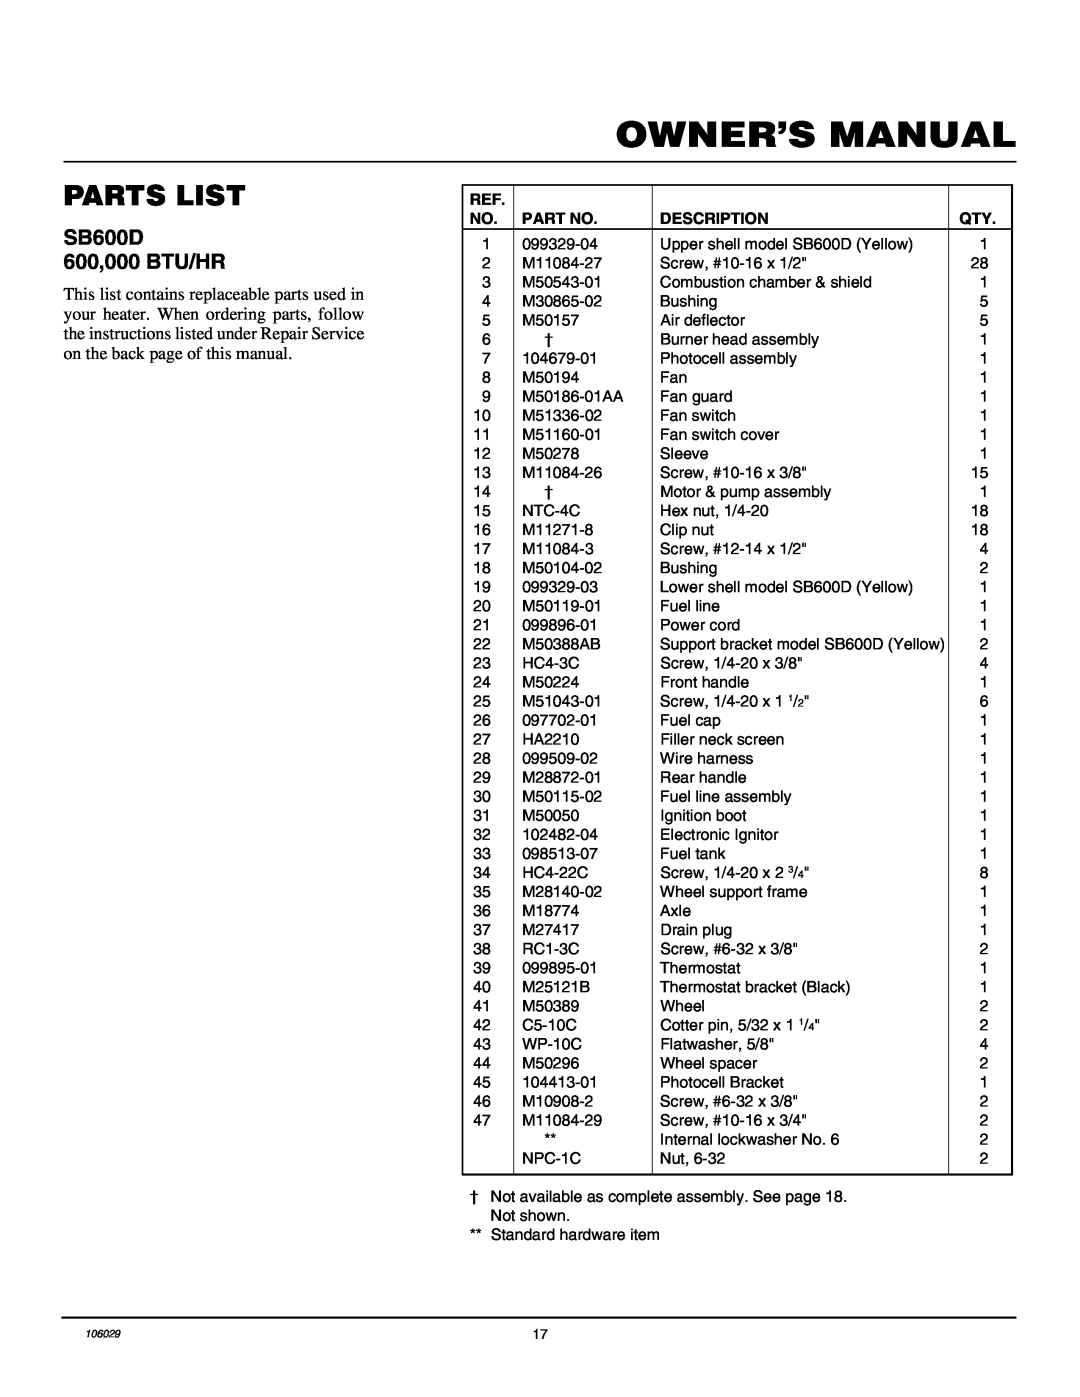 Desa SB350D owner manual Parts List, SB600D 600,000 BTU/HR, Description 